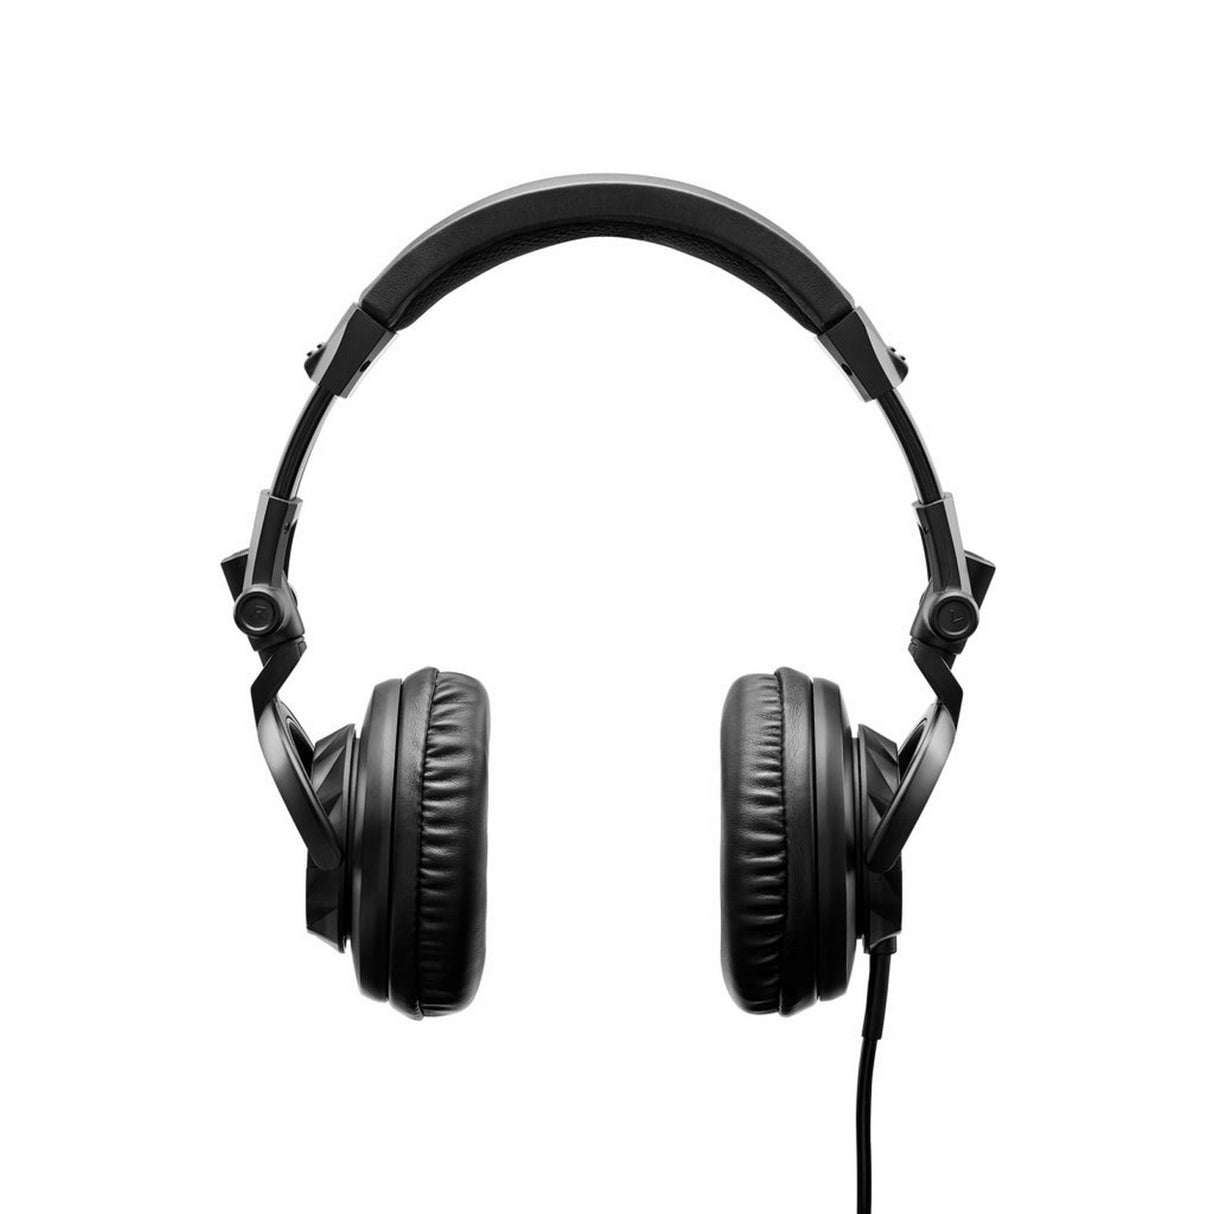 Hercules HDP DJ45 Closed-Back Headphone for DJs